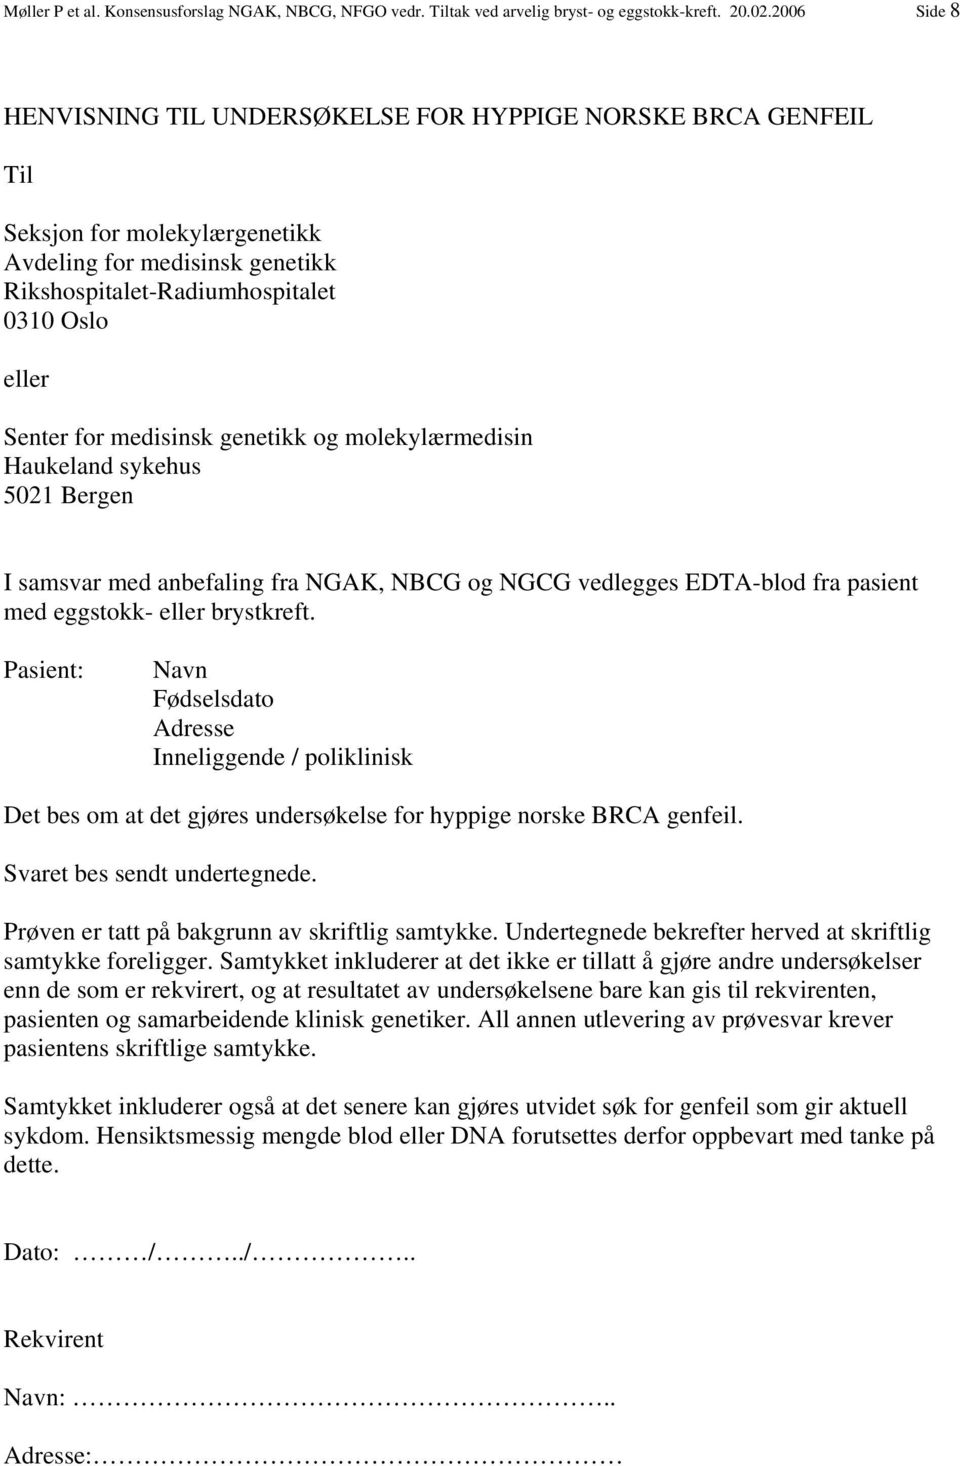 medisinsk genetikk og molekylærmedisin Haukeland sykehus 5021 Bergen I samsvar med anbefaling fra NGAK, NBCG og NGCG vedlegges EDTA-blod fra pasient med eggstokk- eller brystkreft.